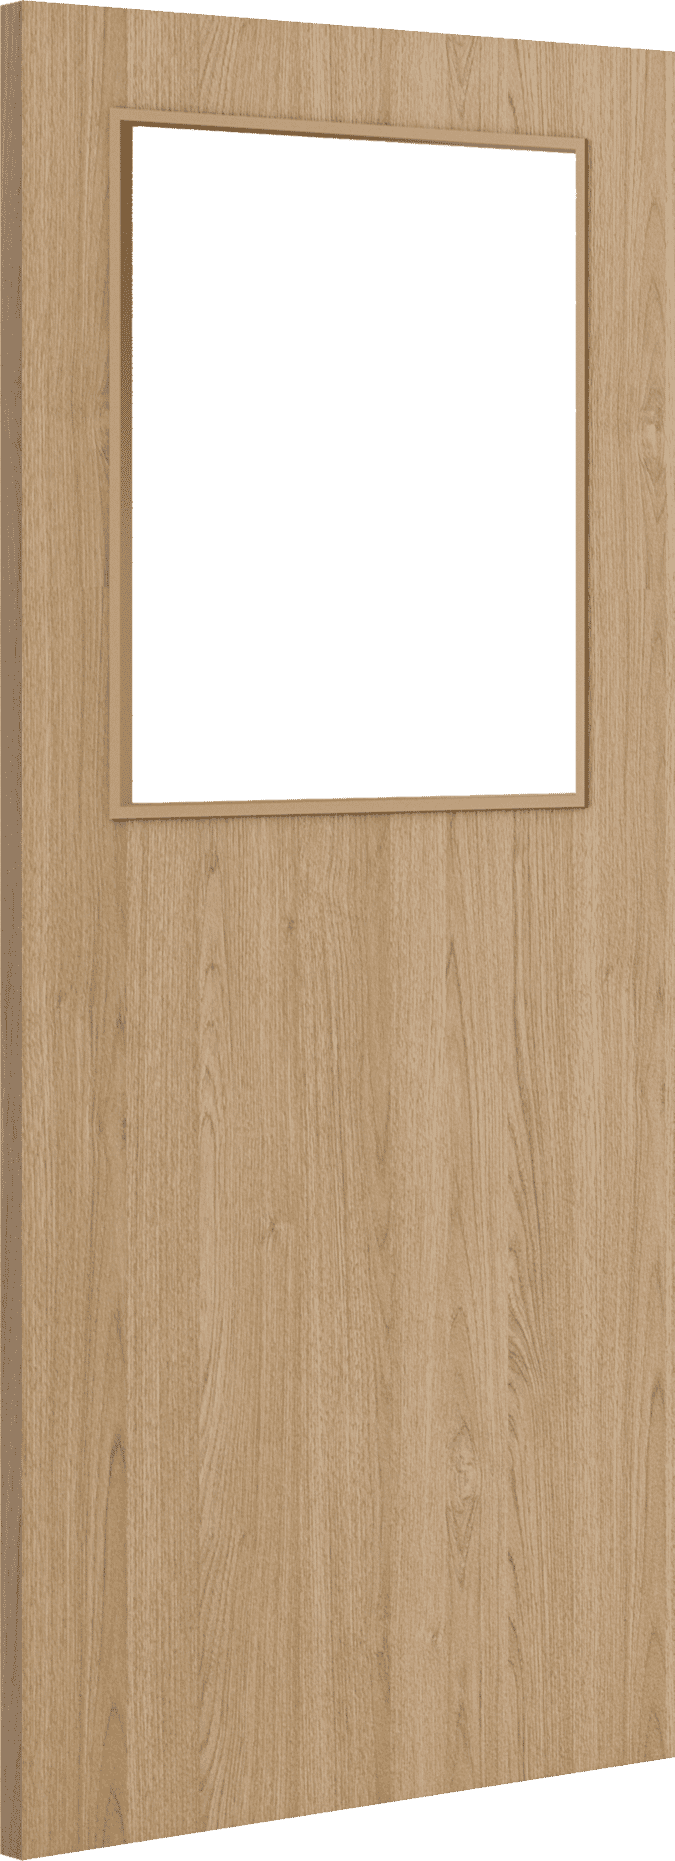 2040mm x 826mm x 44mm Architectural Oak 01 Clear Glazed - Prefinished FD30 Fire Door Blank